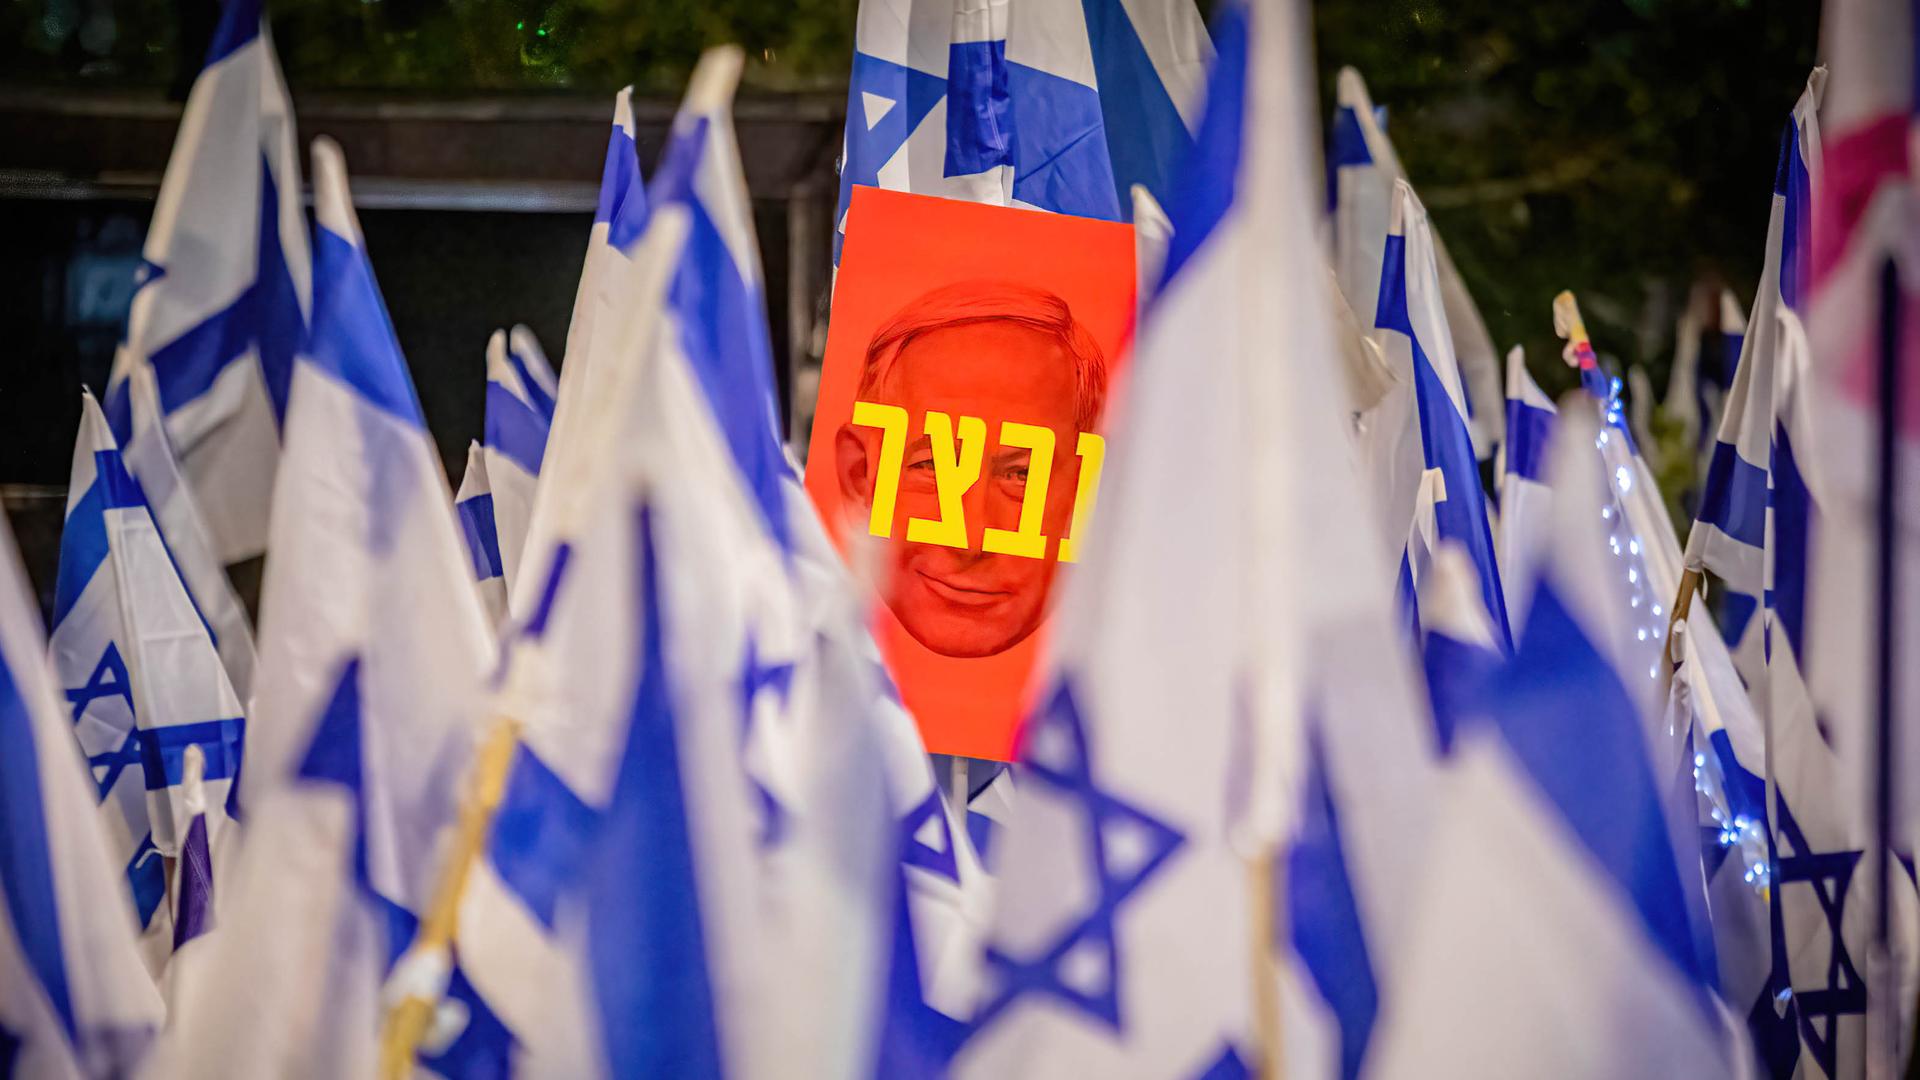 Hunderttausende Menschen demonstrieren im April gegen Netanjahus Pläne zur Reform des Justizwesens. Zwischen blau-weißen Israel-Flaggen ist ein Plakat mit dem Konterfei Netanjahus zu sehen auf dem auf Hebräisch "Unfähigkeit" steht. 